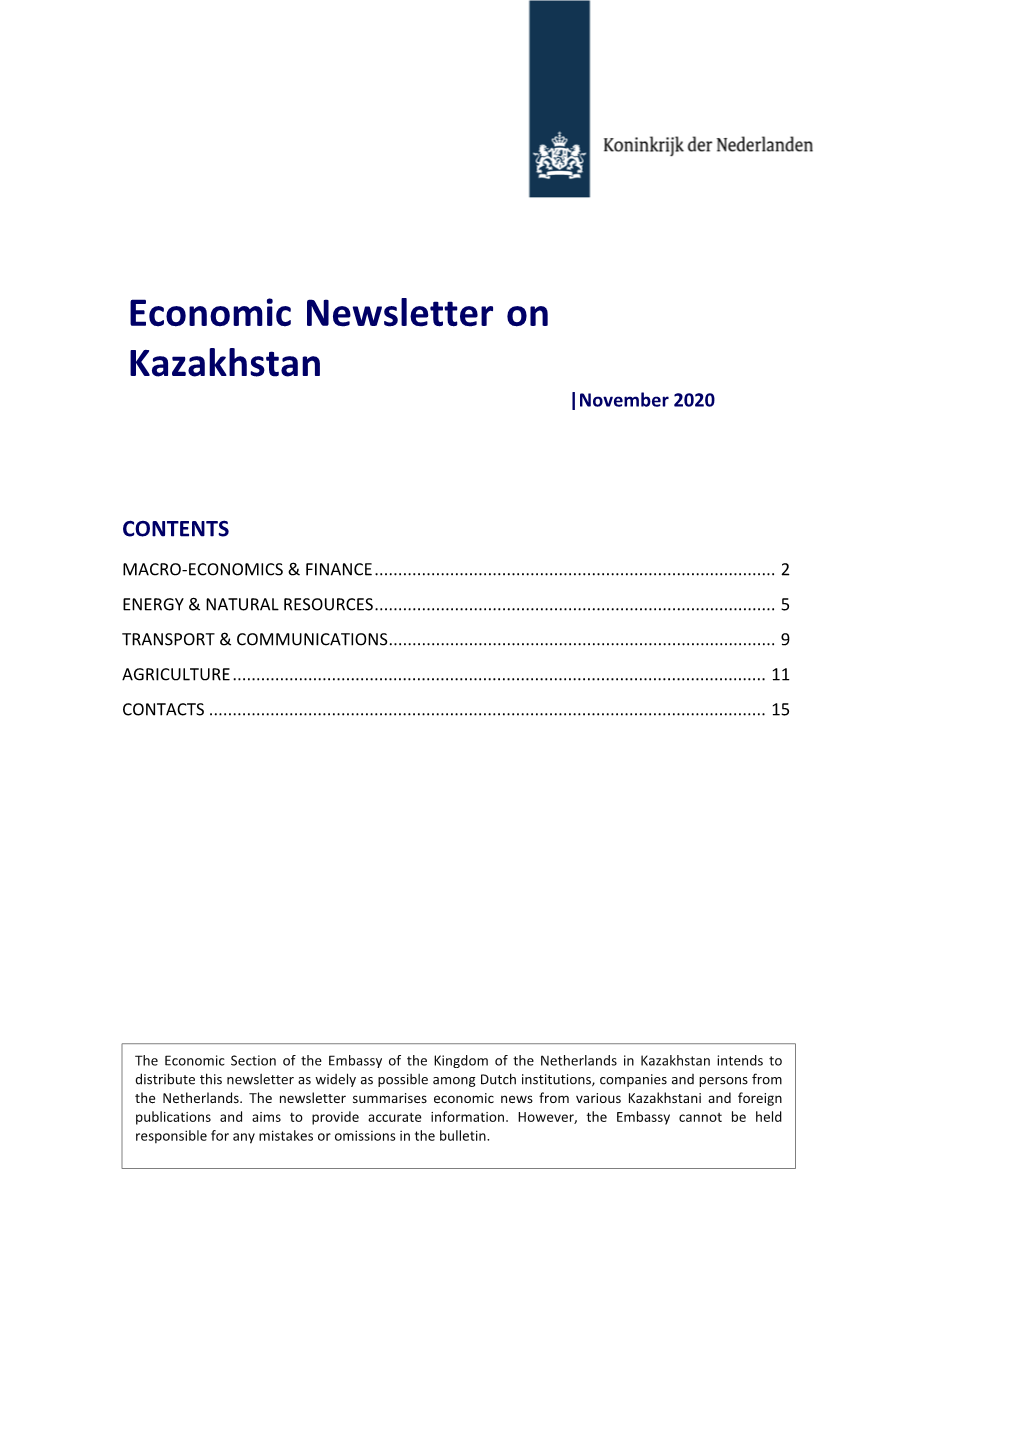 Economic Newsletter on Kazakhstan |November 2020